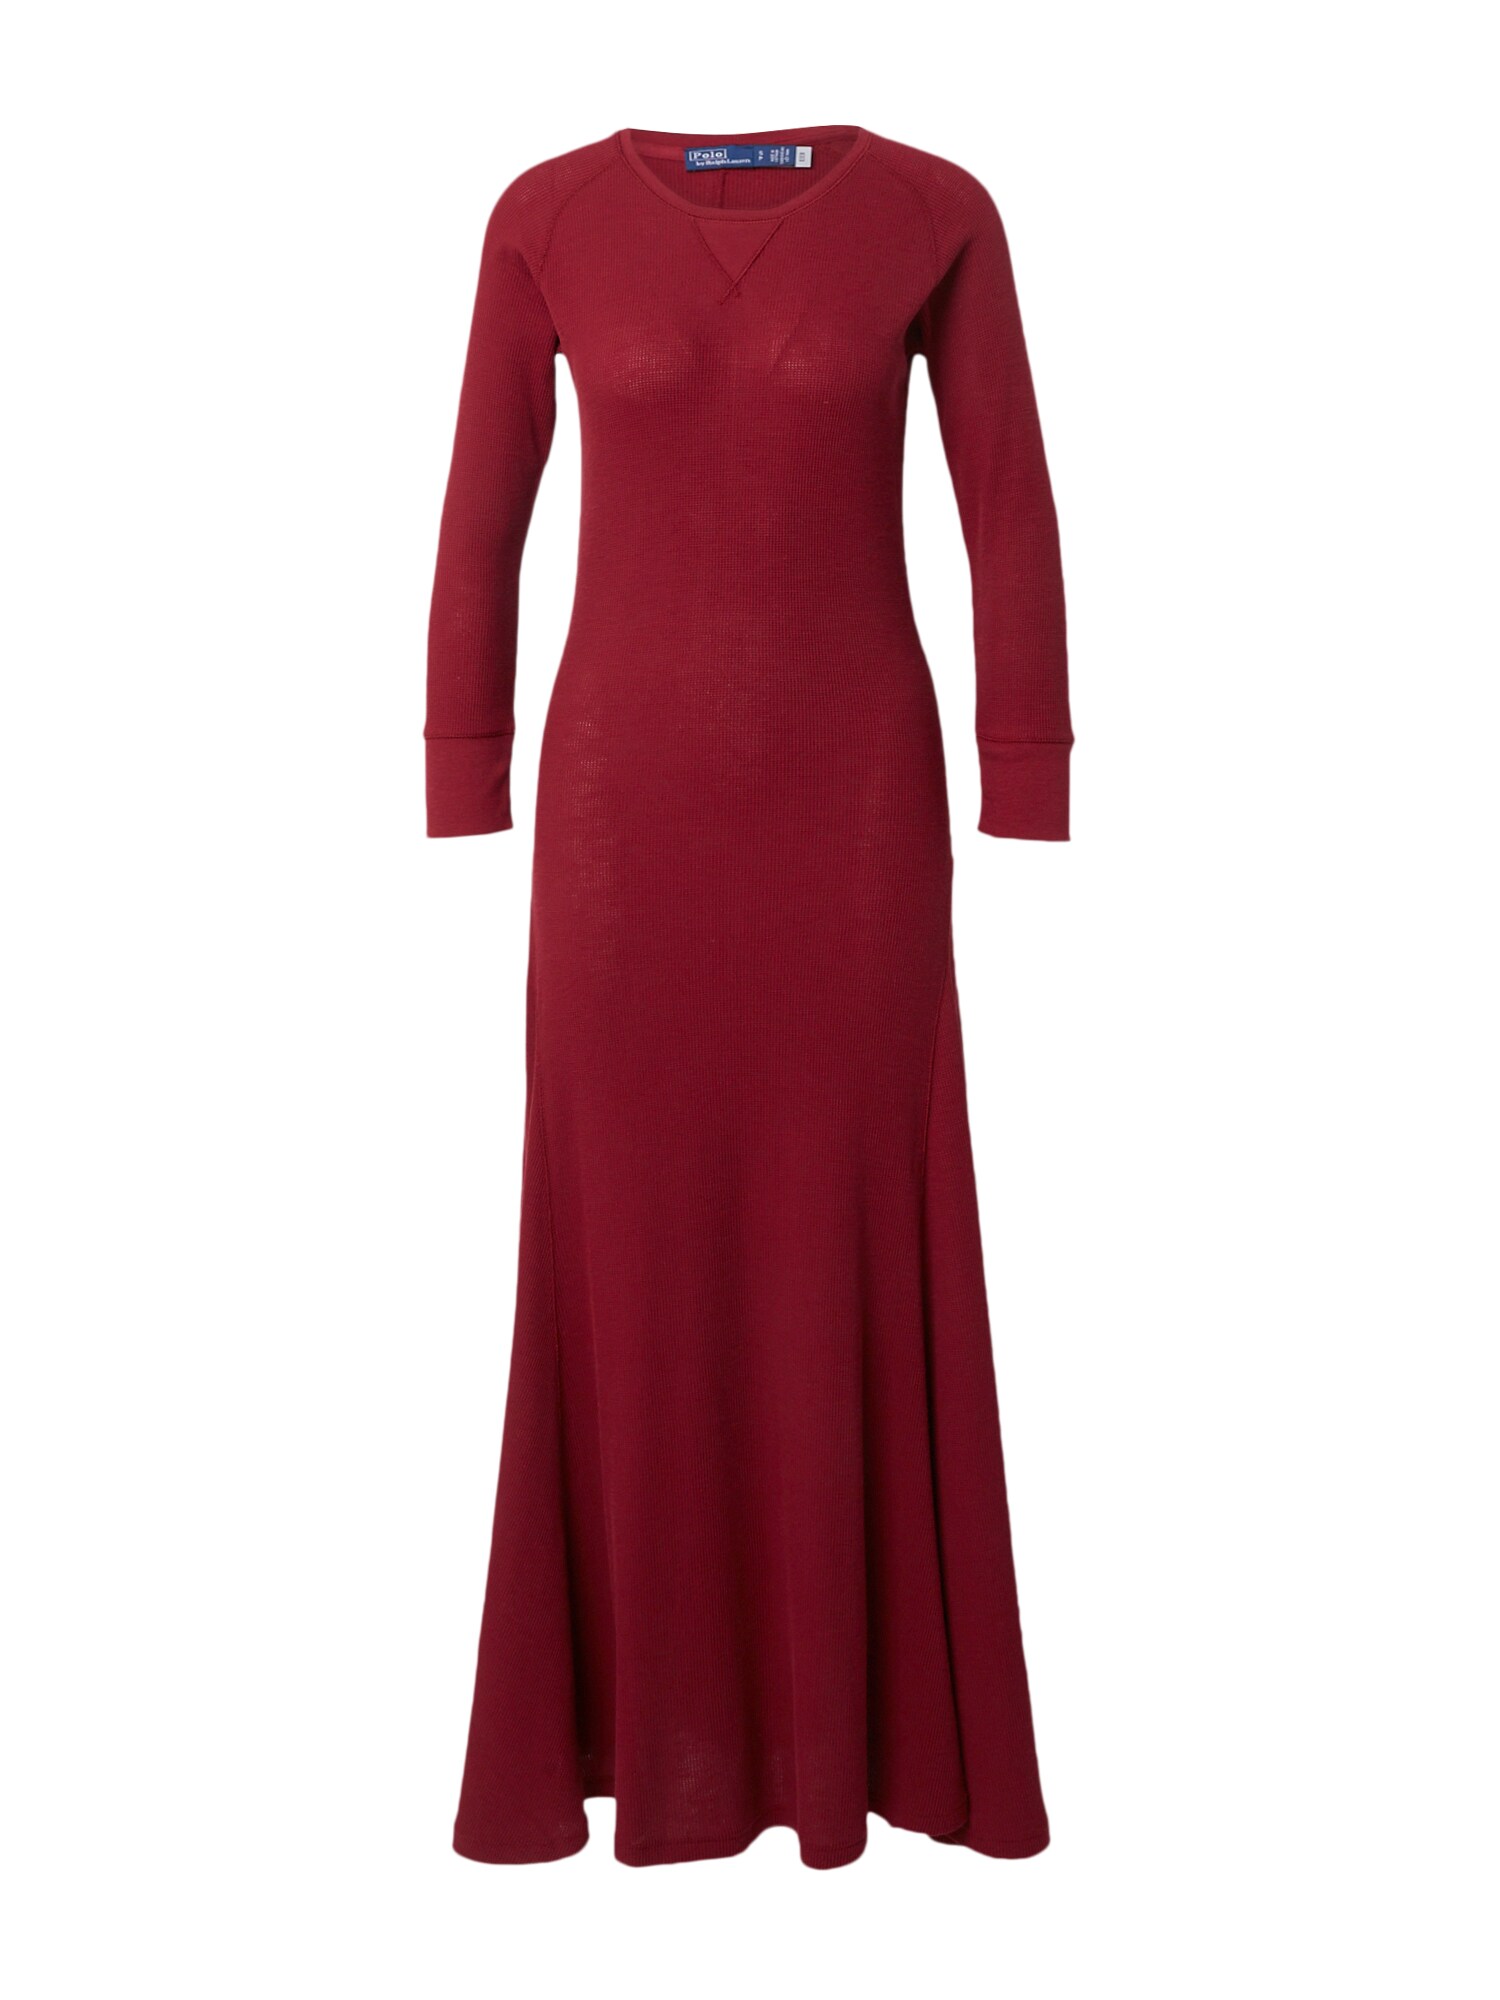 Polo Ralph Lauren Suknelė 'ROWIE' vyno raudona spalva